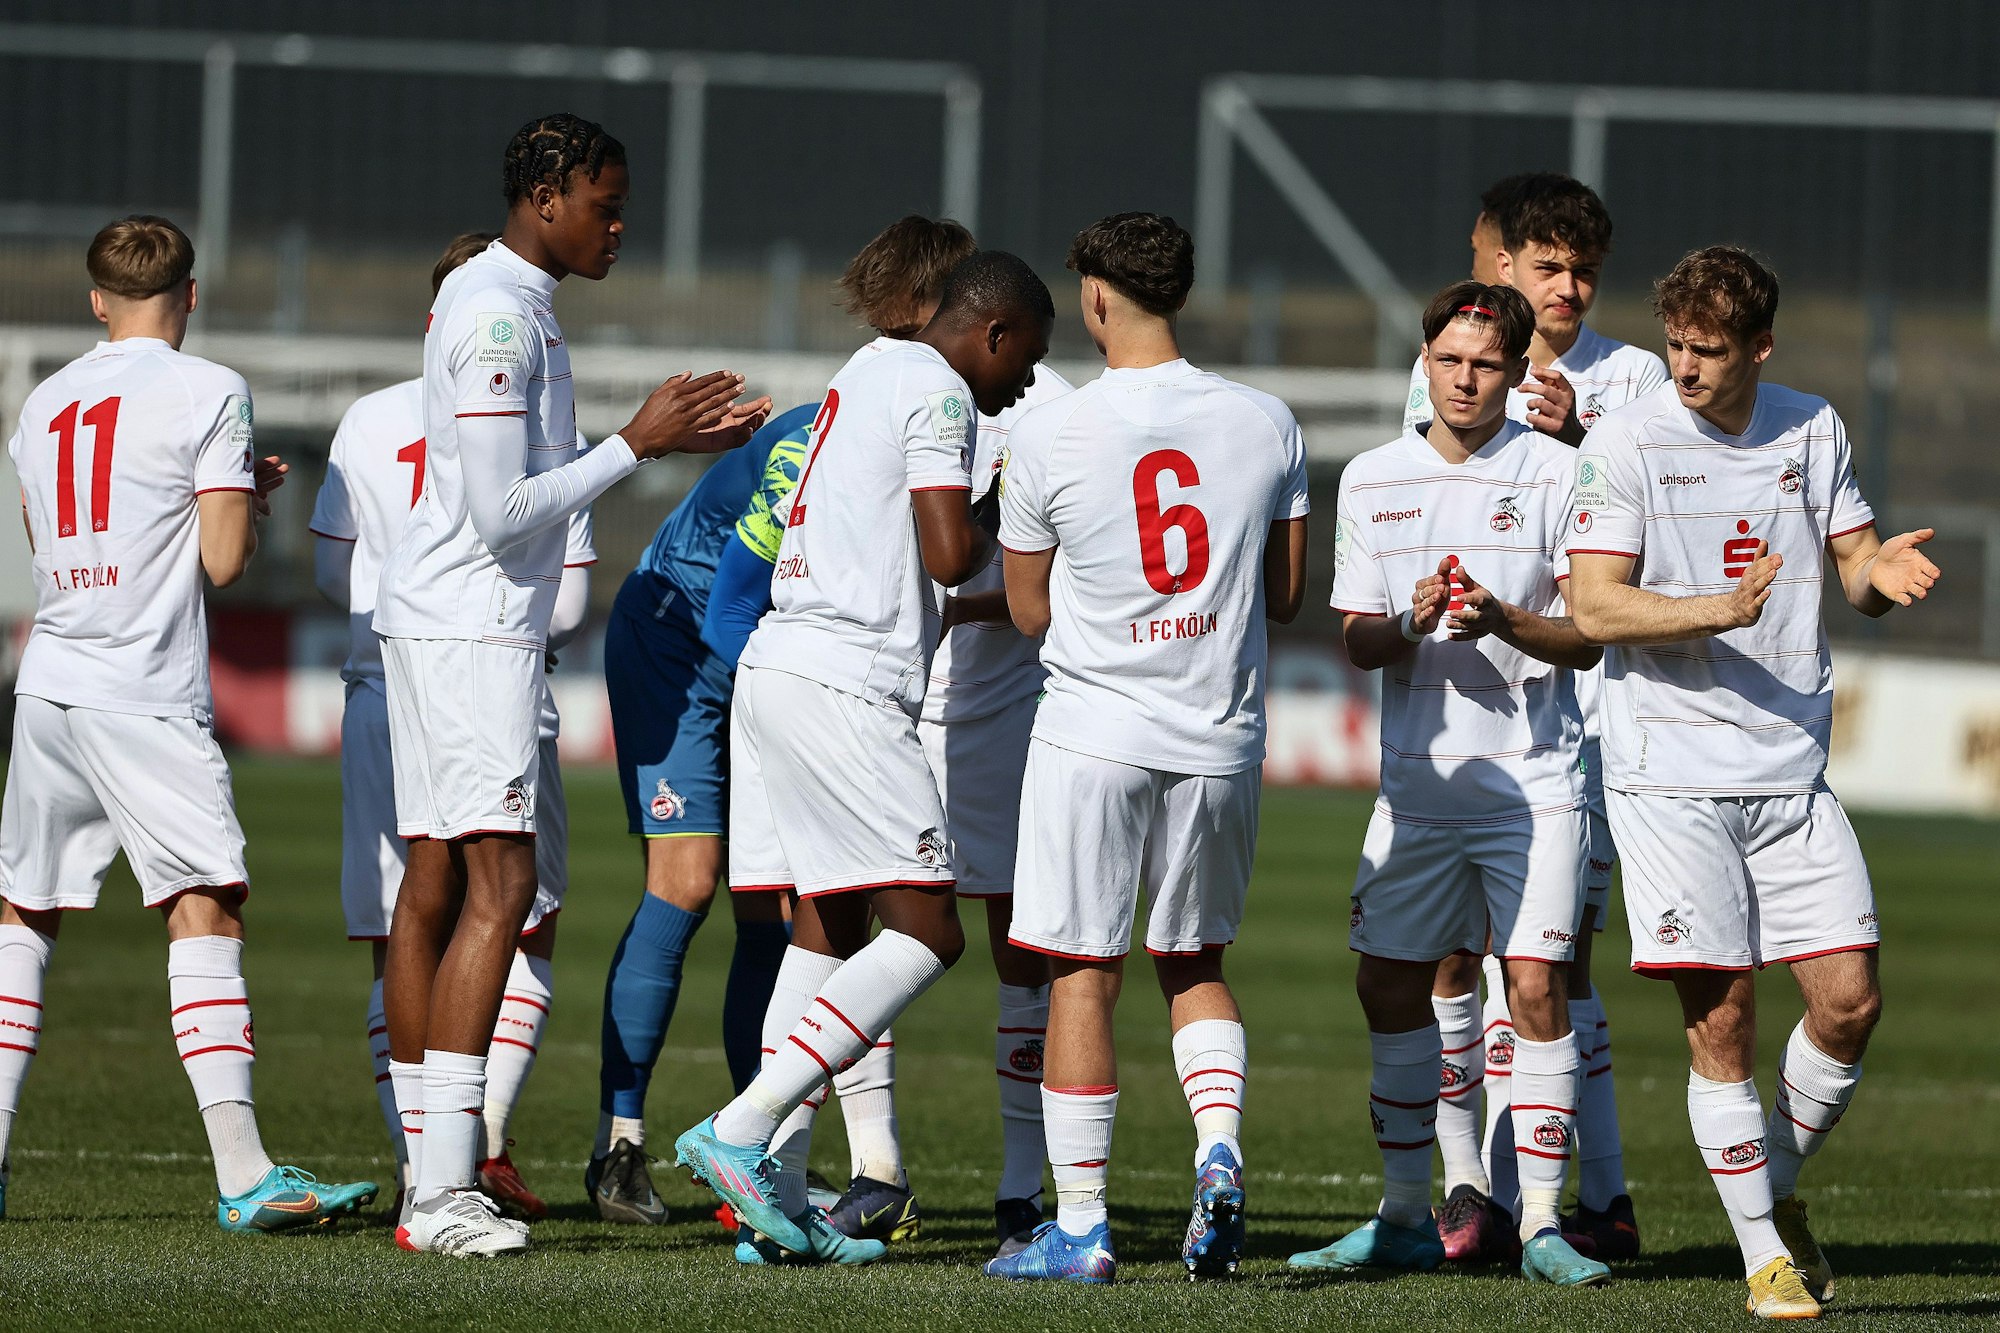 Die Spieler der U19 des 1. FC Köln klatschen sich in einem Spiel ab.